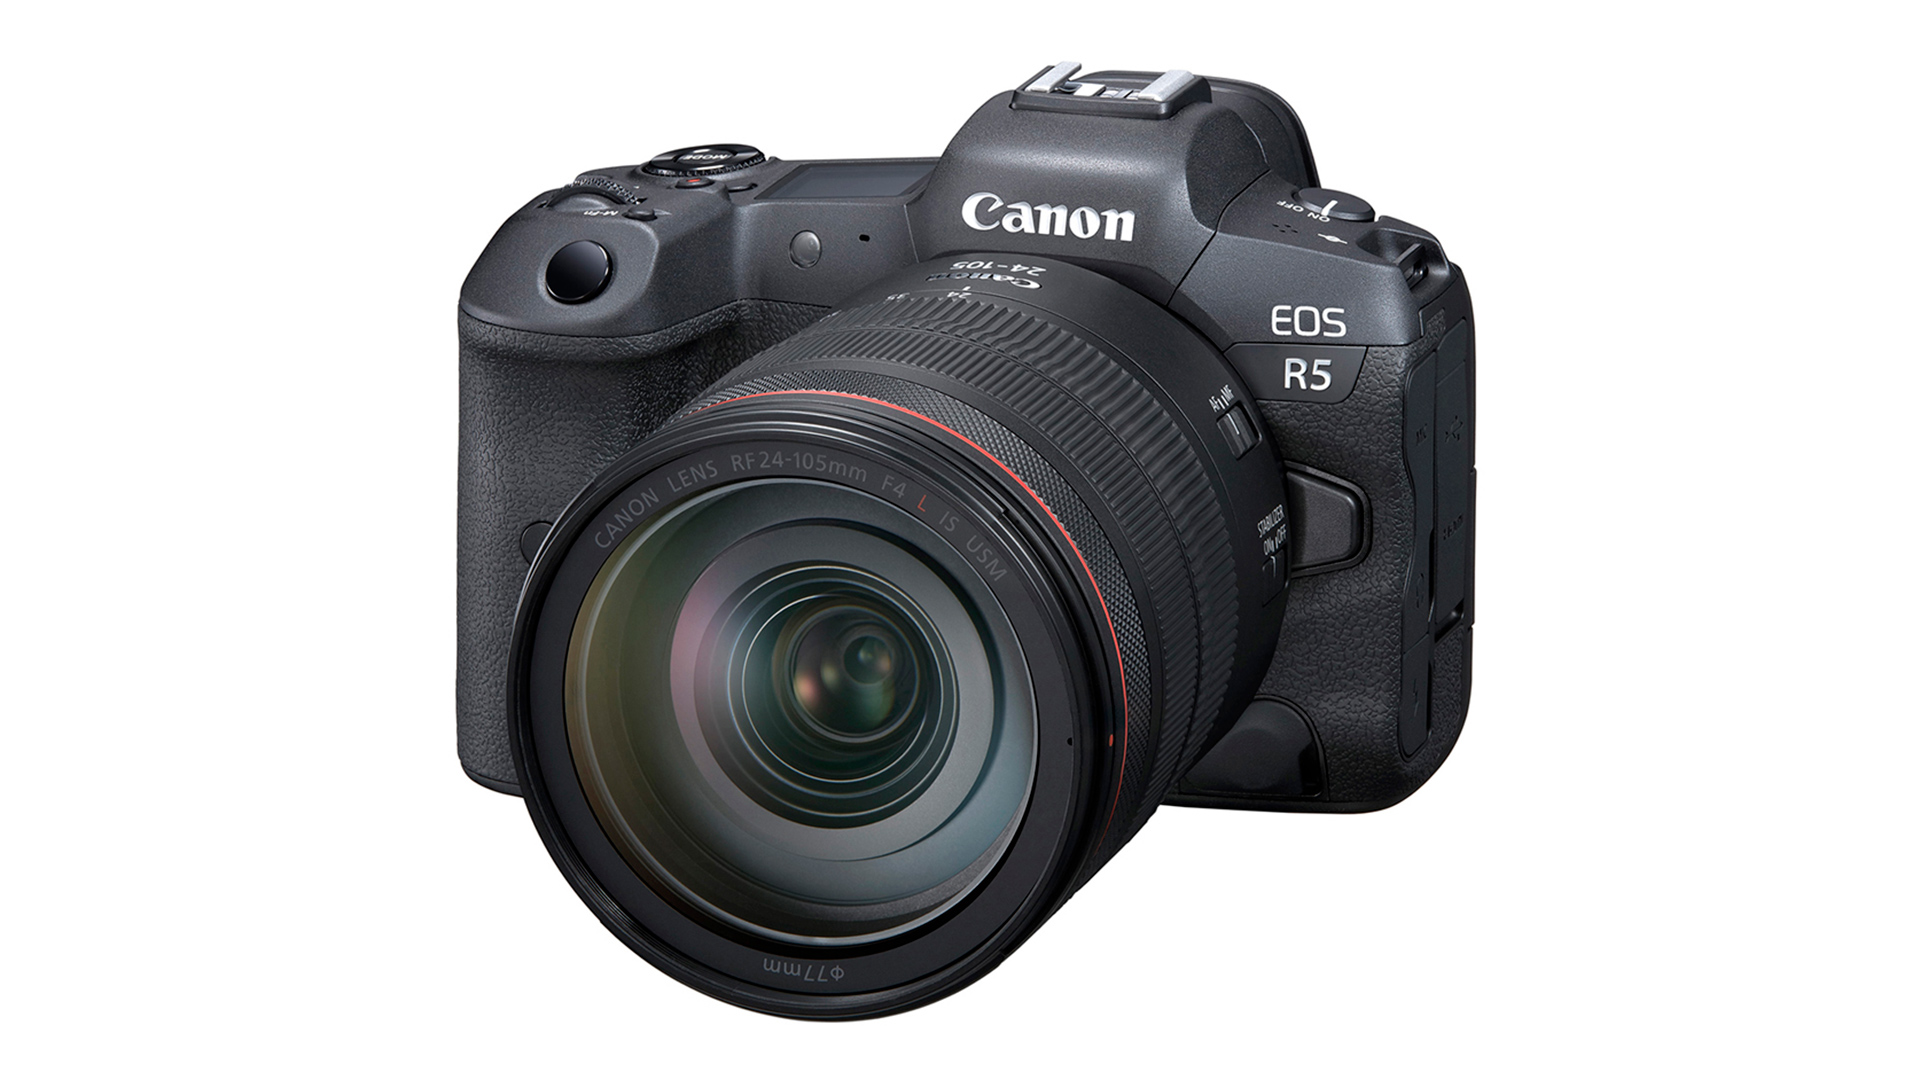 The Canon EOS R5